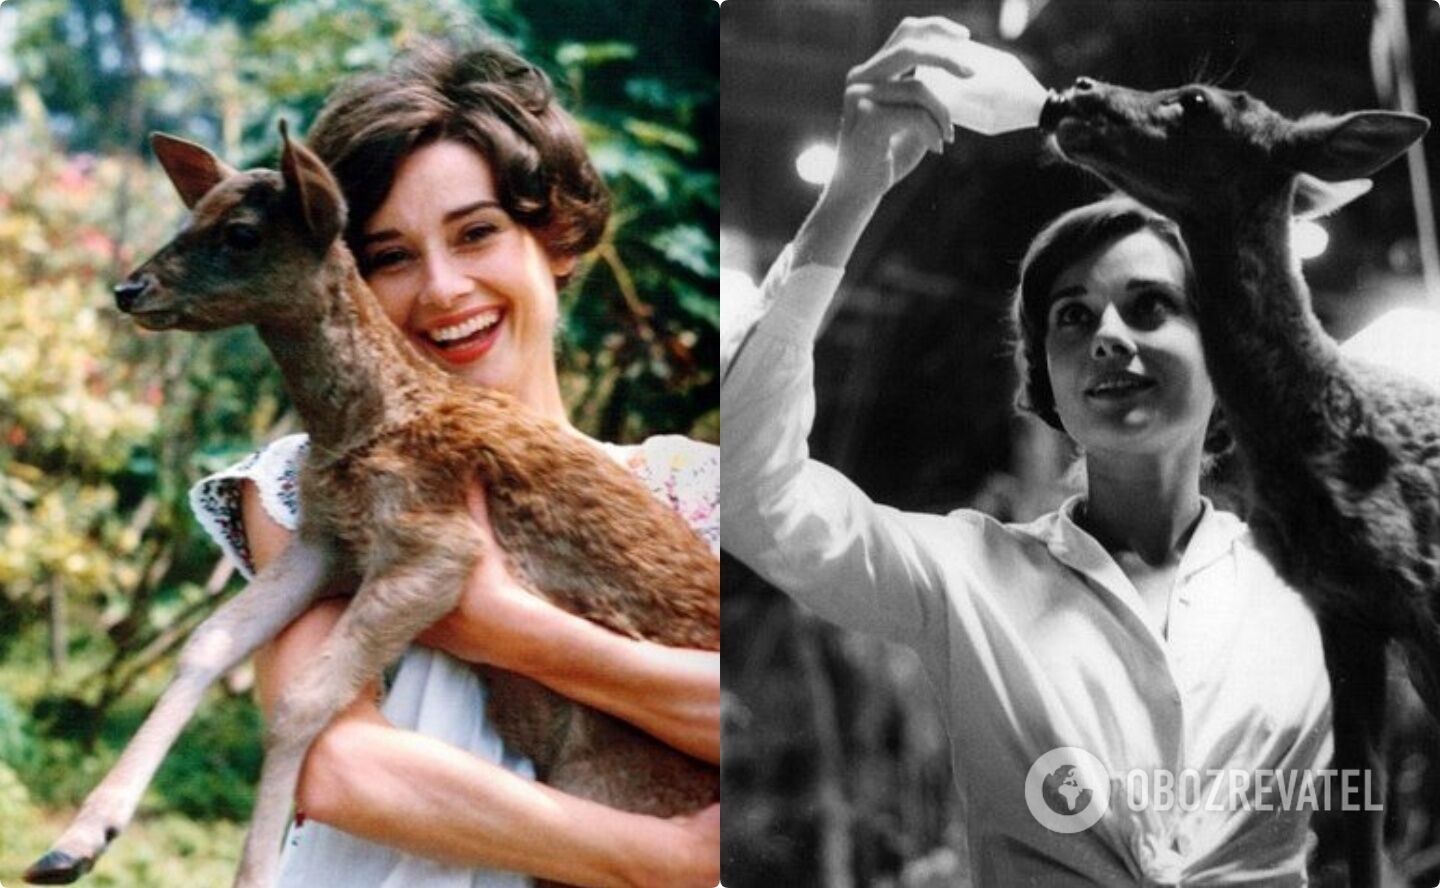 Одри Хепберн завела дома оленя после съемок в фильме "Зеленые особняки".